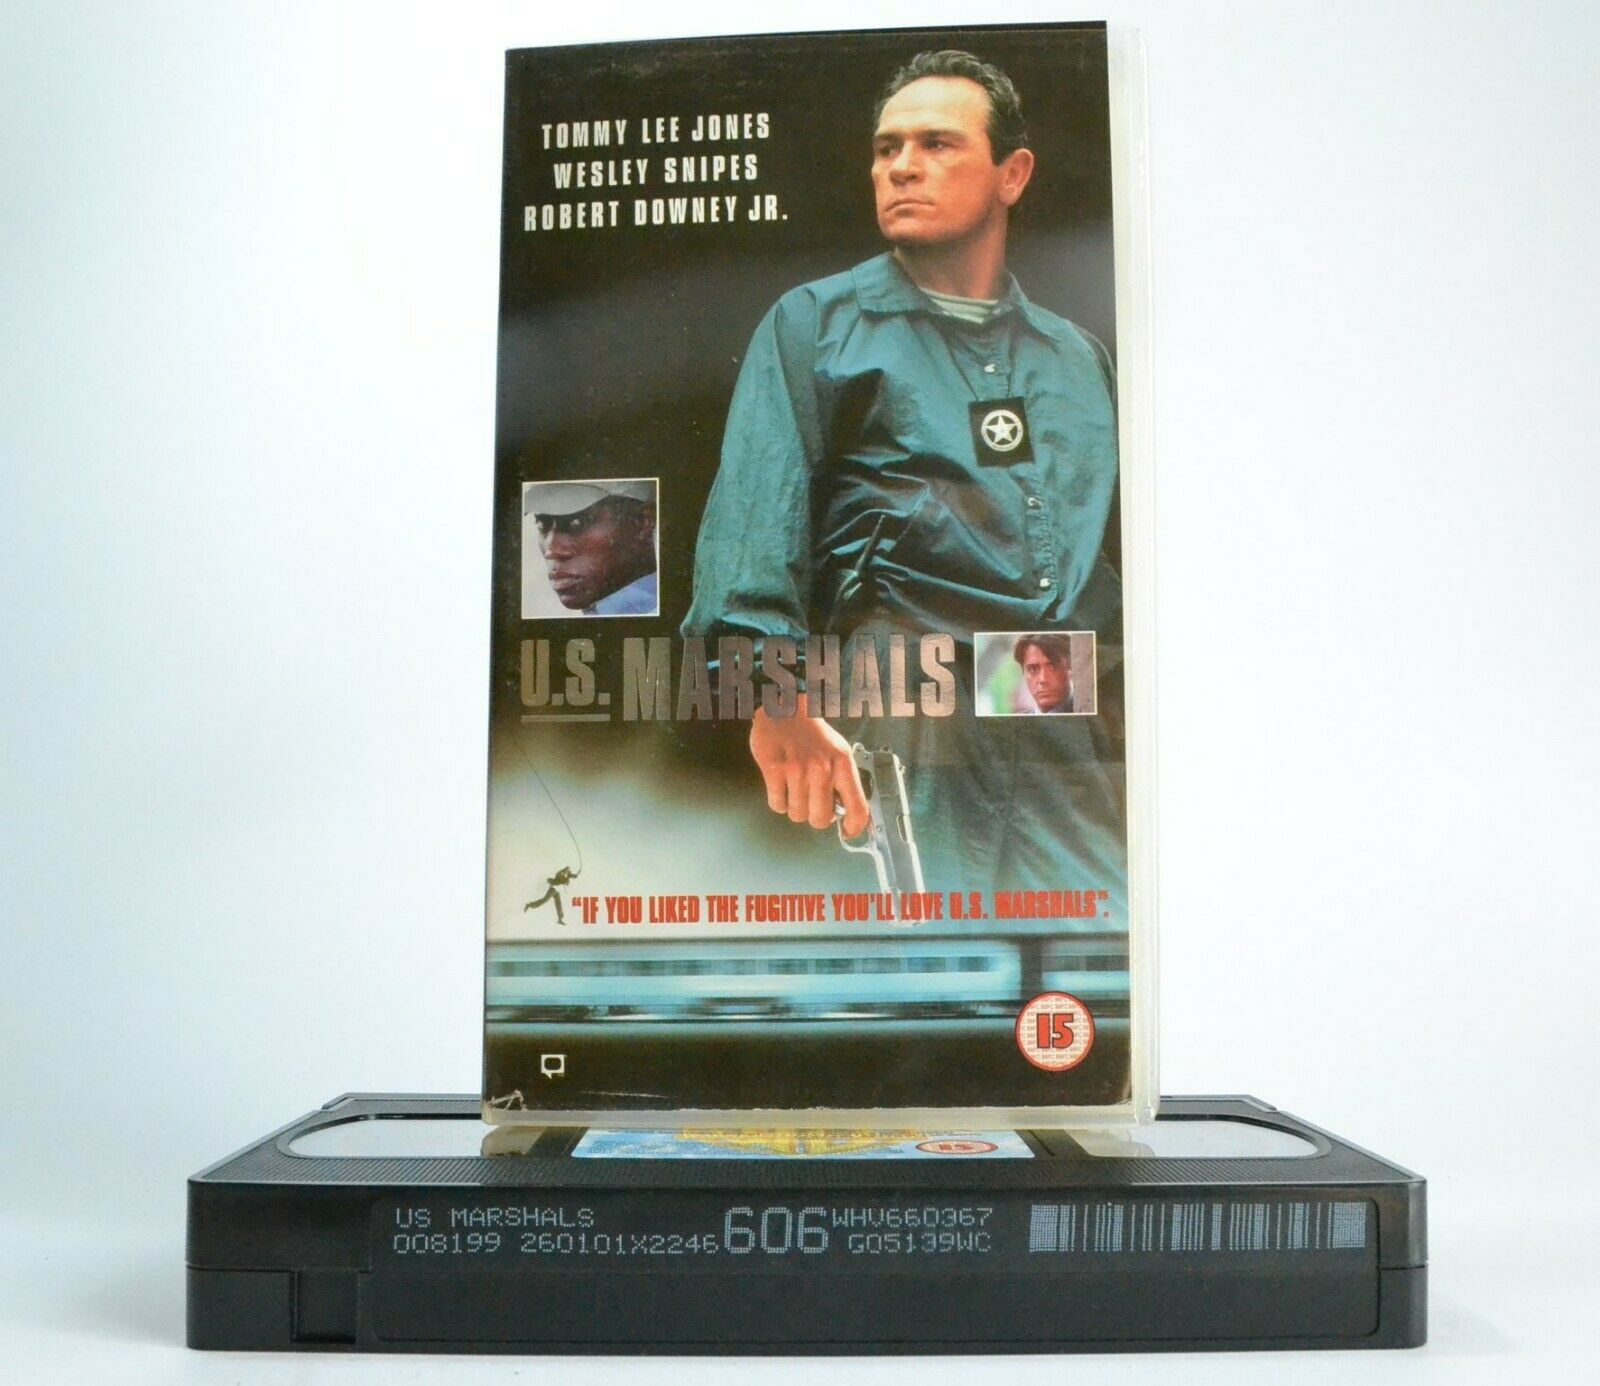 U.S. Marshals: "The Fugitive" Spin Off - Action Thriller - Tommy Lee Jones - VHS-